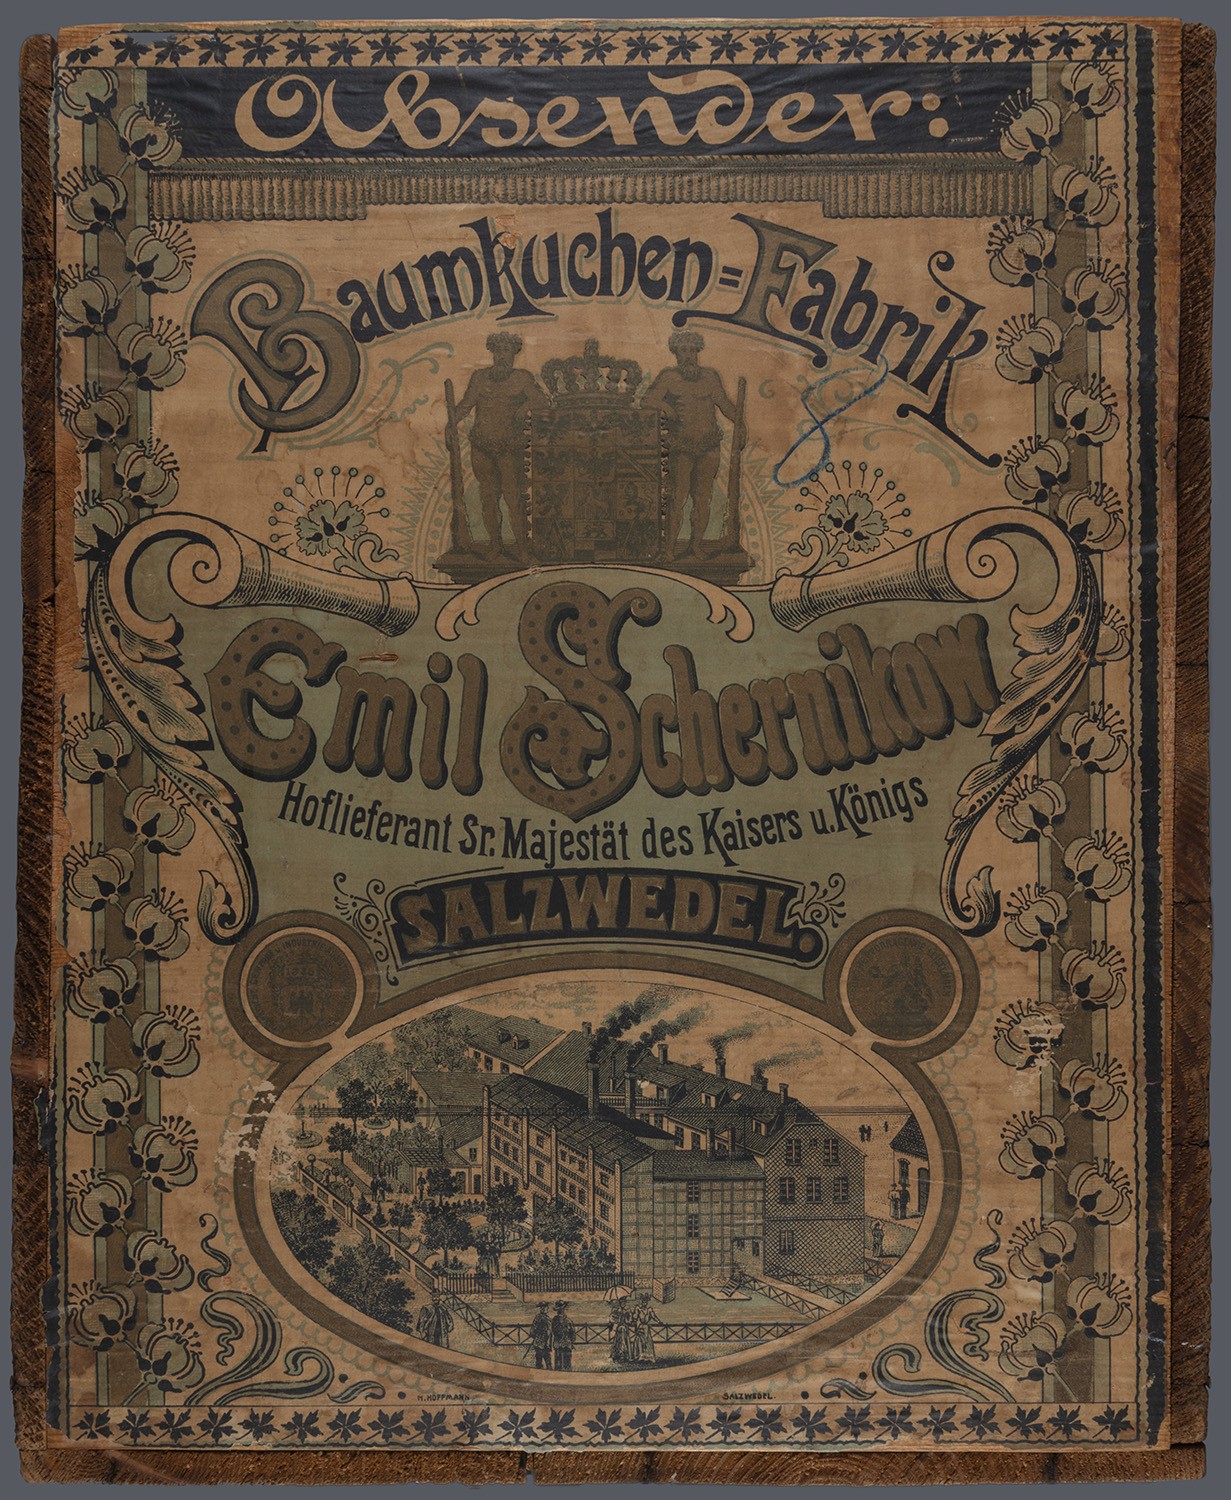 Salzwedel: Baumkuchenfabrik Emil Schernikow (Landesgeschichtliche Vereinigung für die Mark Brandenburg e.V., Archiv CC BY)